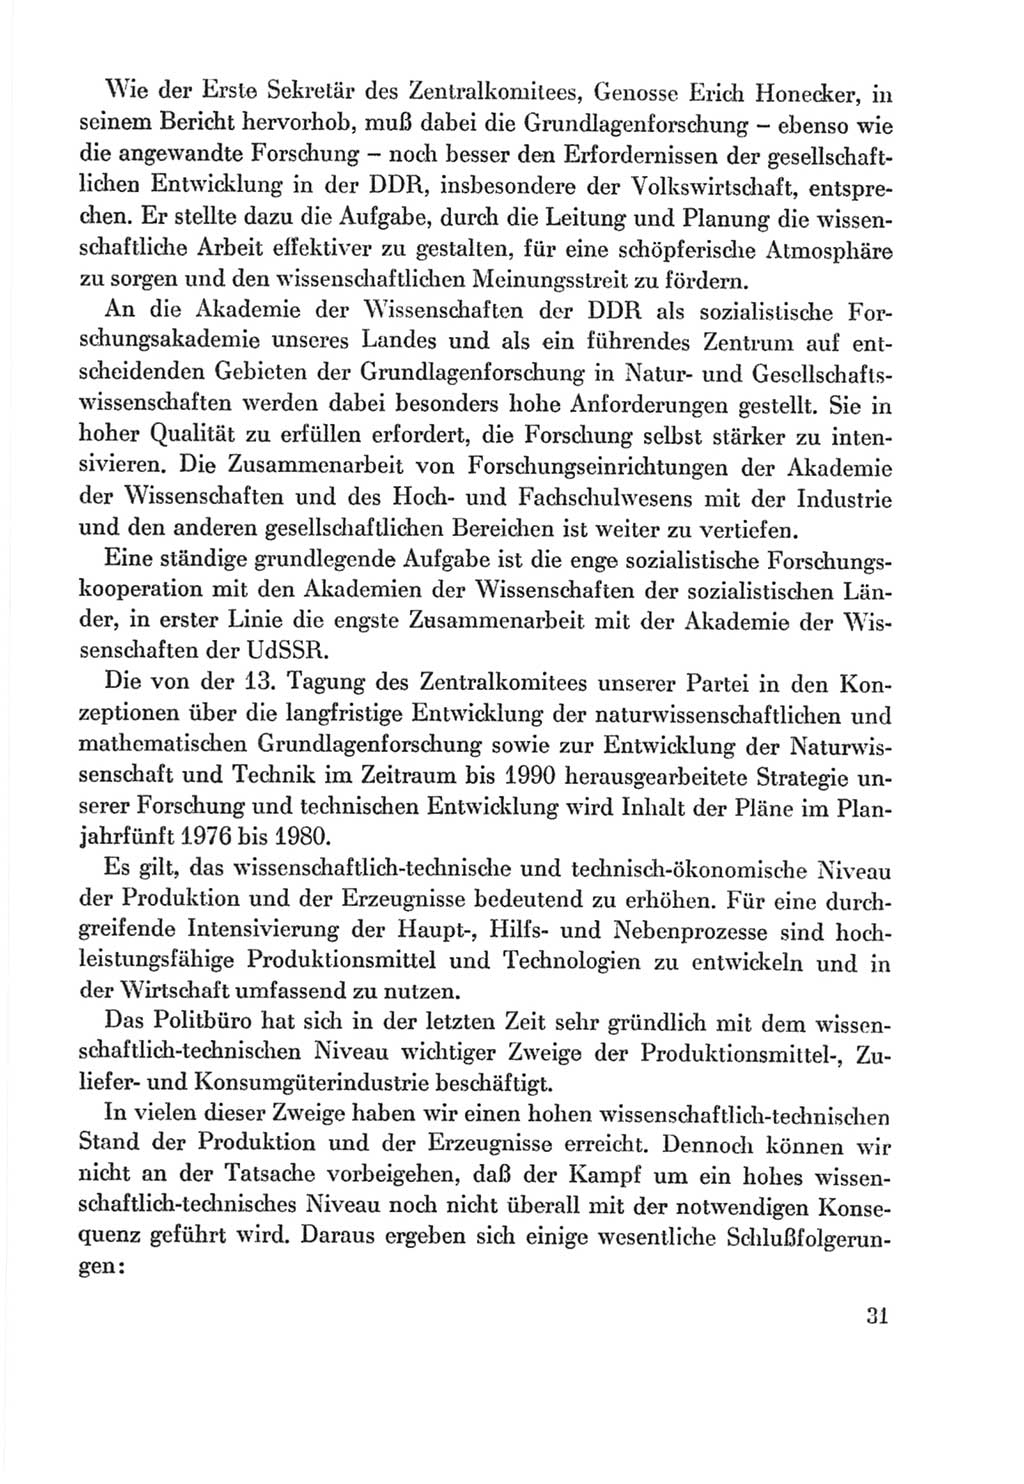 Protokoll der Verhandlungen des Ⅸ. Parteitages der Sozialistischen Einheitspartei Deutschlands (SED) [Deutsche Demokratische Republik (DDR)] 1976, Band 2, Seite 31 (Prot. Verh. Ⅸ. PT SED DDR 1976, Bd. 2, S. 31)